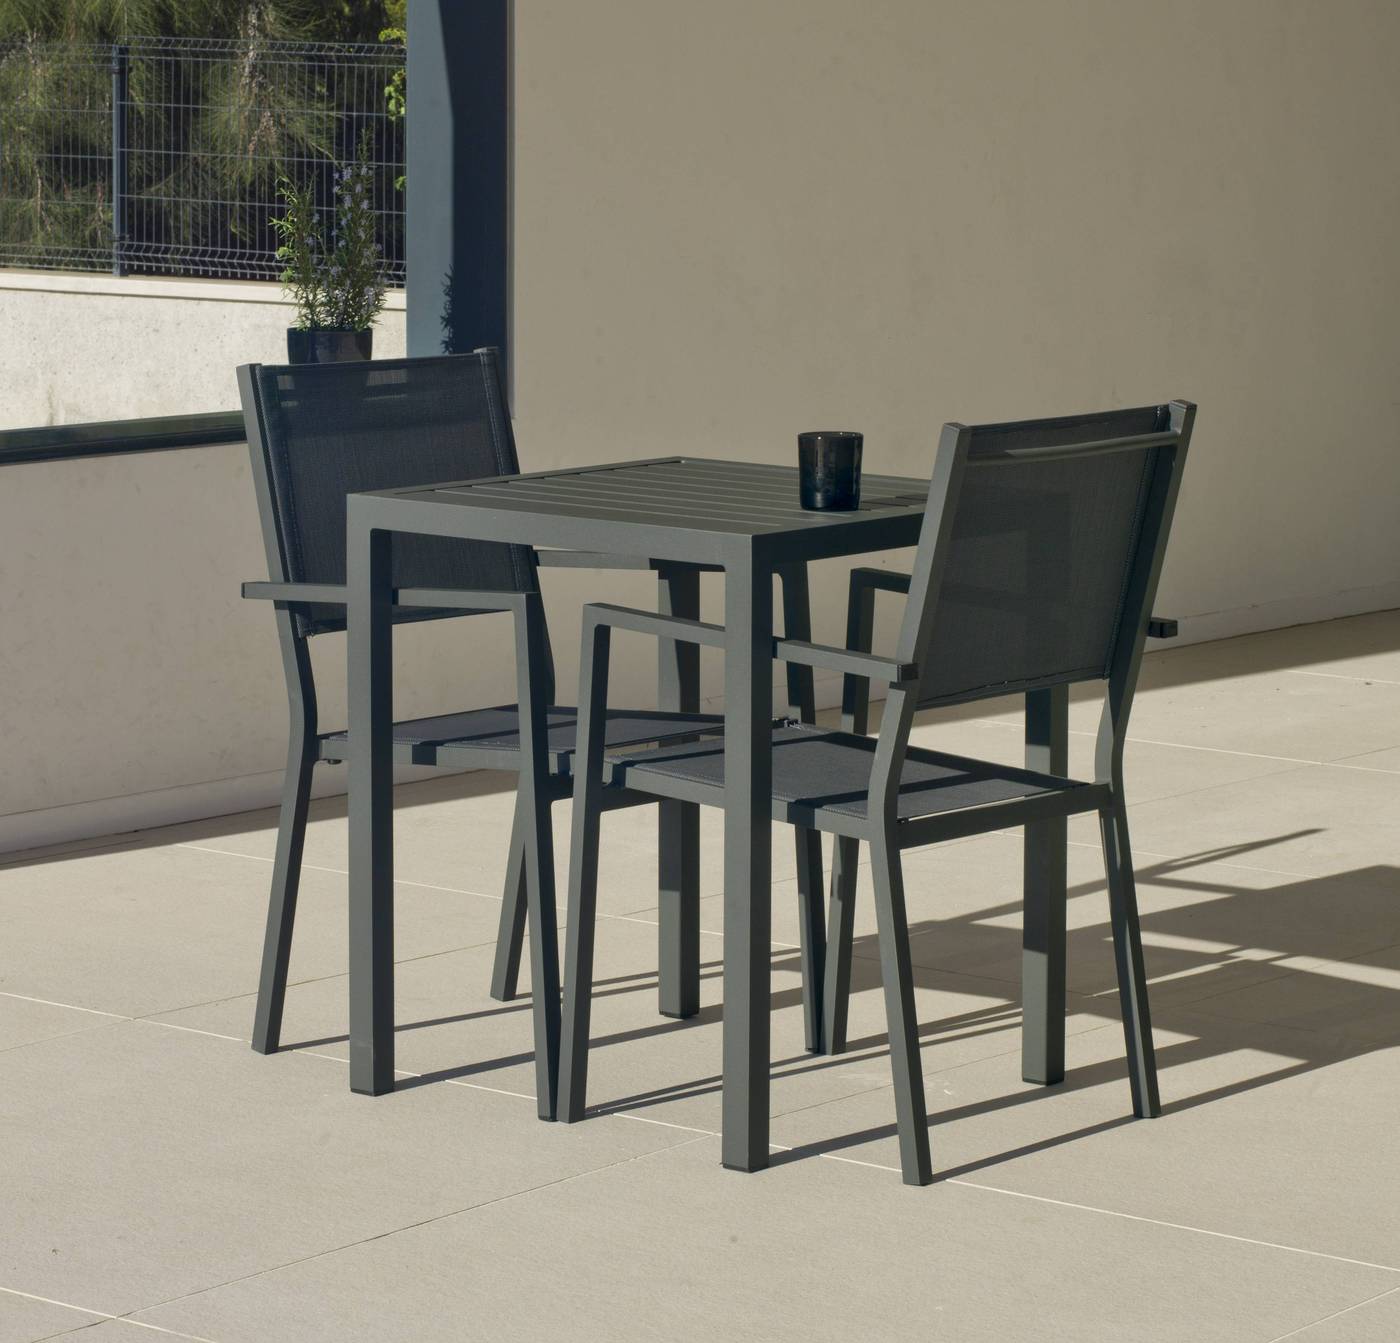 Set Aluminio Melea-Córcega 65-2 - Conjunto aluminio para jardín: Mesa cuadrada de 65 cm. + 2 sillones de aluminio y textilen. Disponible en color blanco, antracita, champagne, plata o marrón.